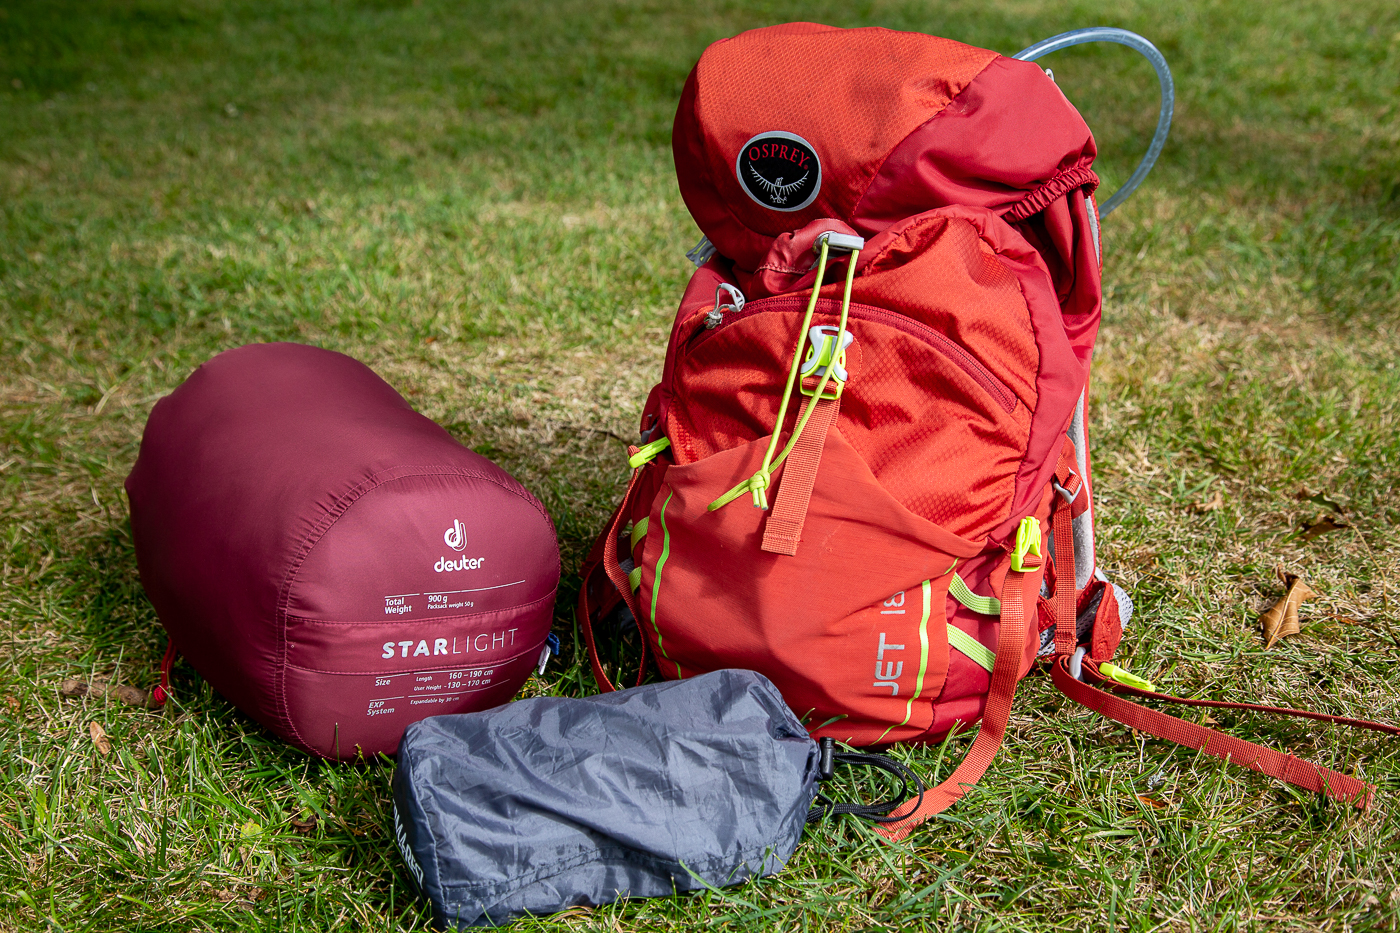 Accessoire pour sac à dos, sac de randonnée et sac de voyage